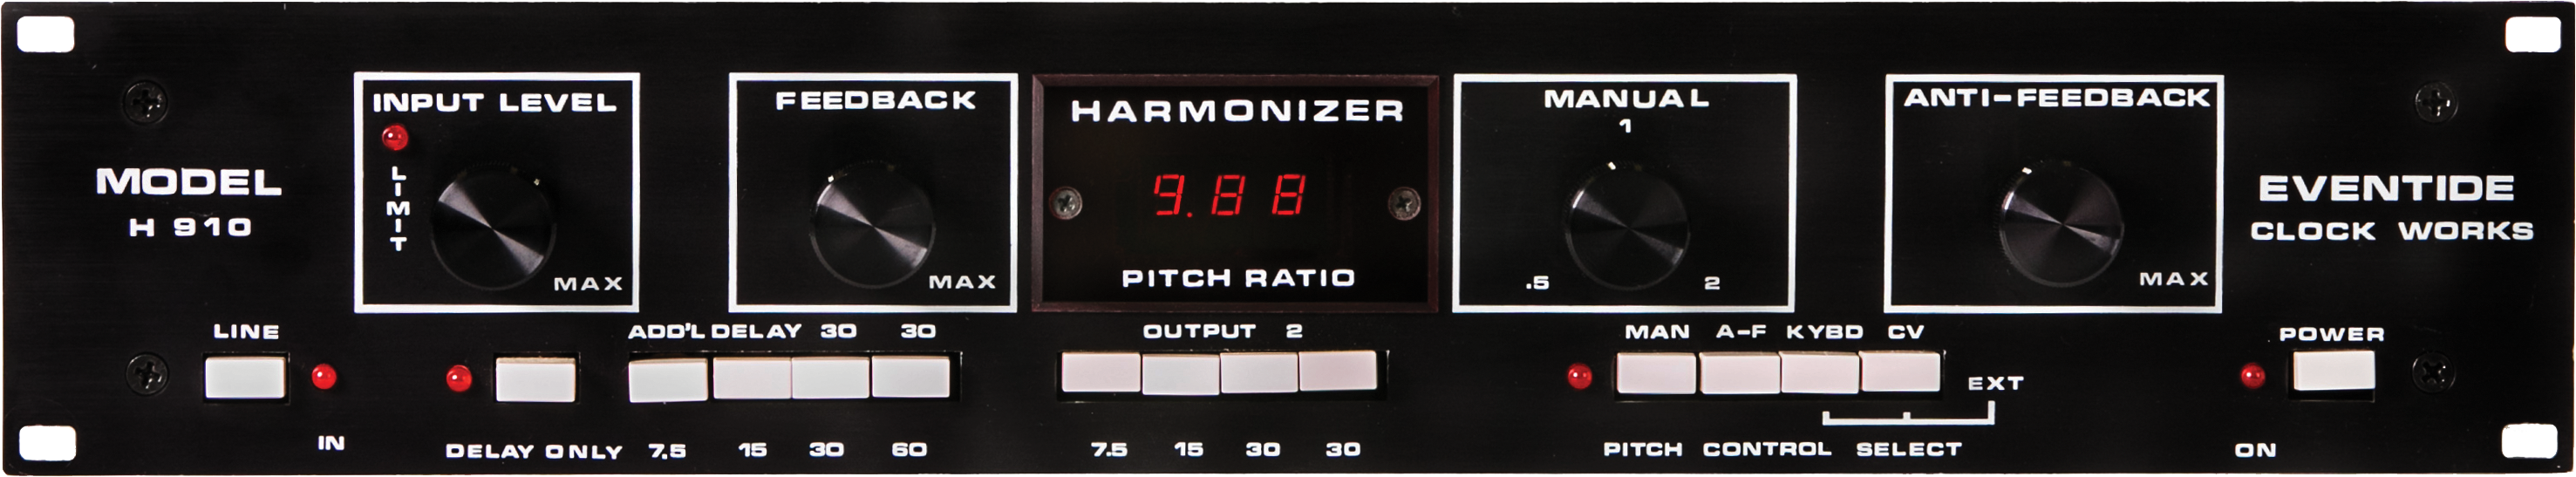 H910 Harmonizer Rackmount